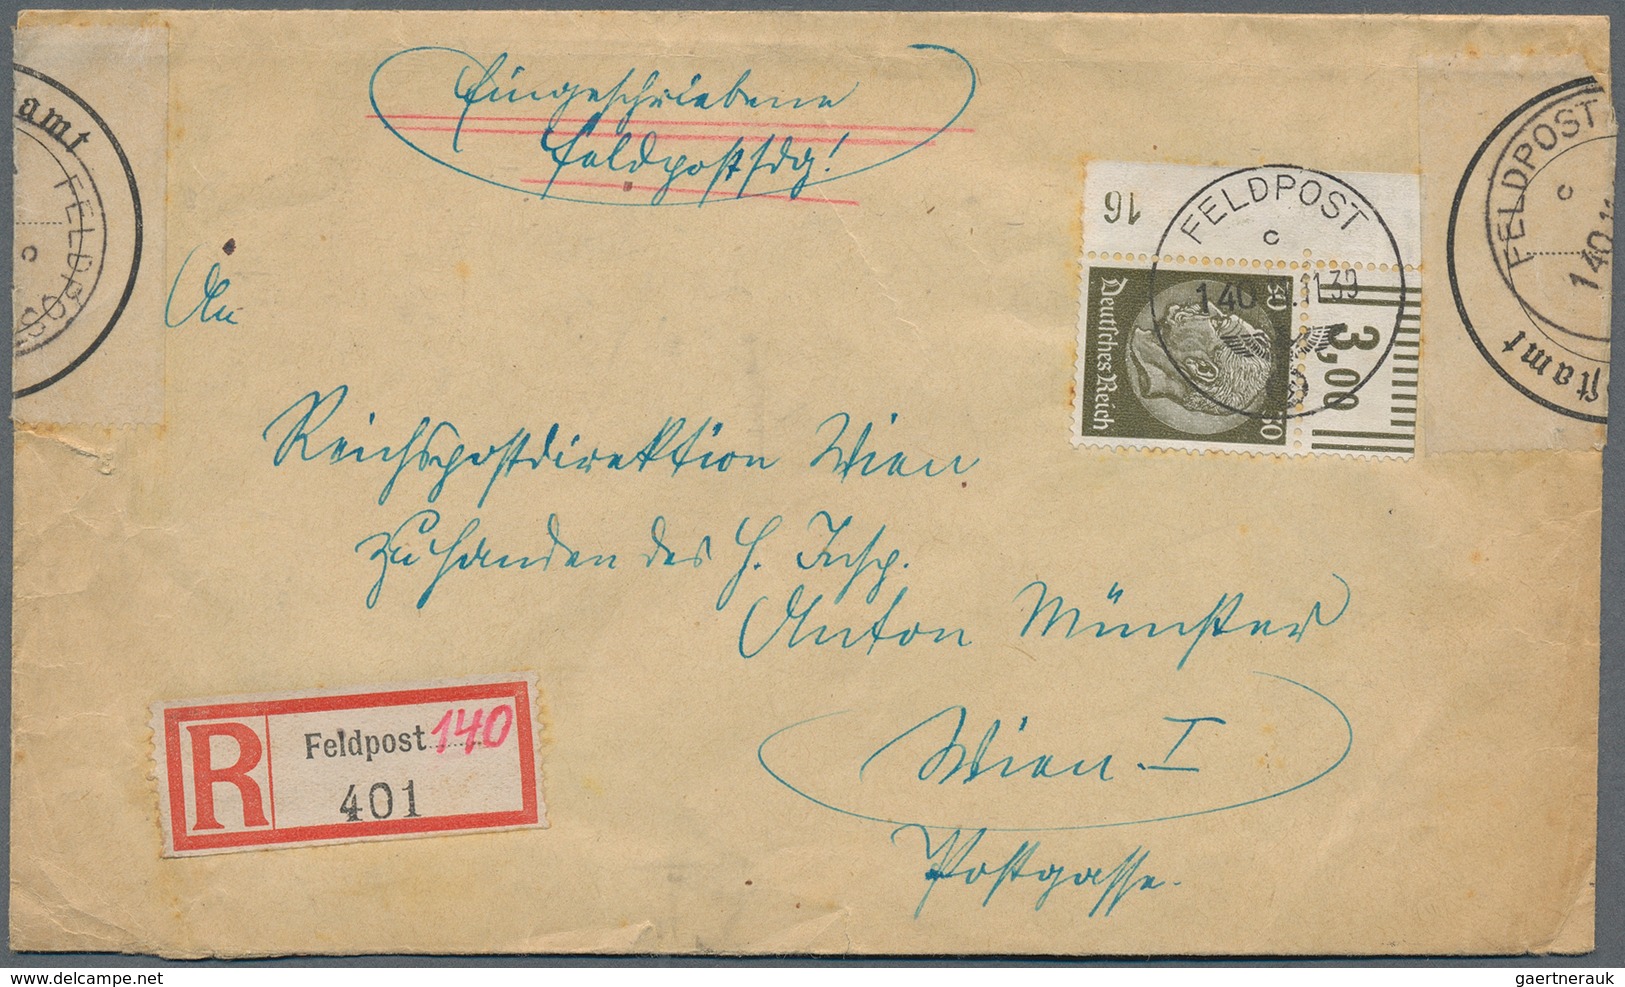 Feldpost 2. Weltkrieg: 1937/1945, reichhaltiger Posten mit über 400 Belegen der Deutschen Feldpost W